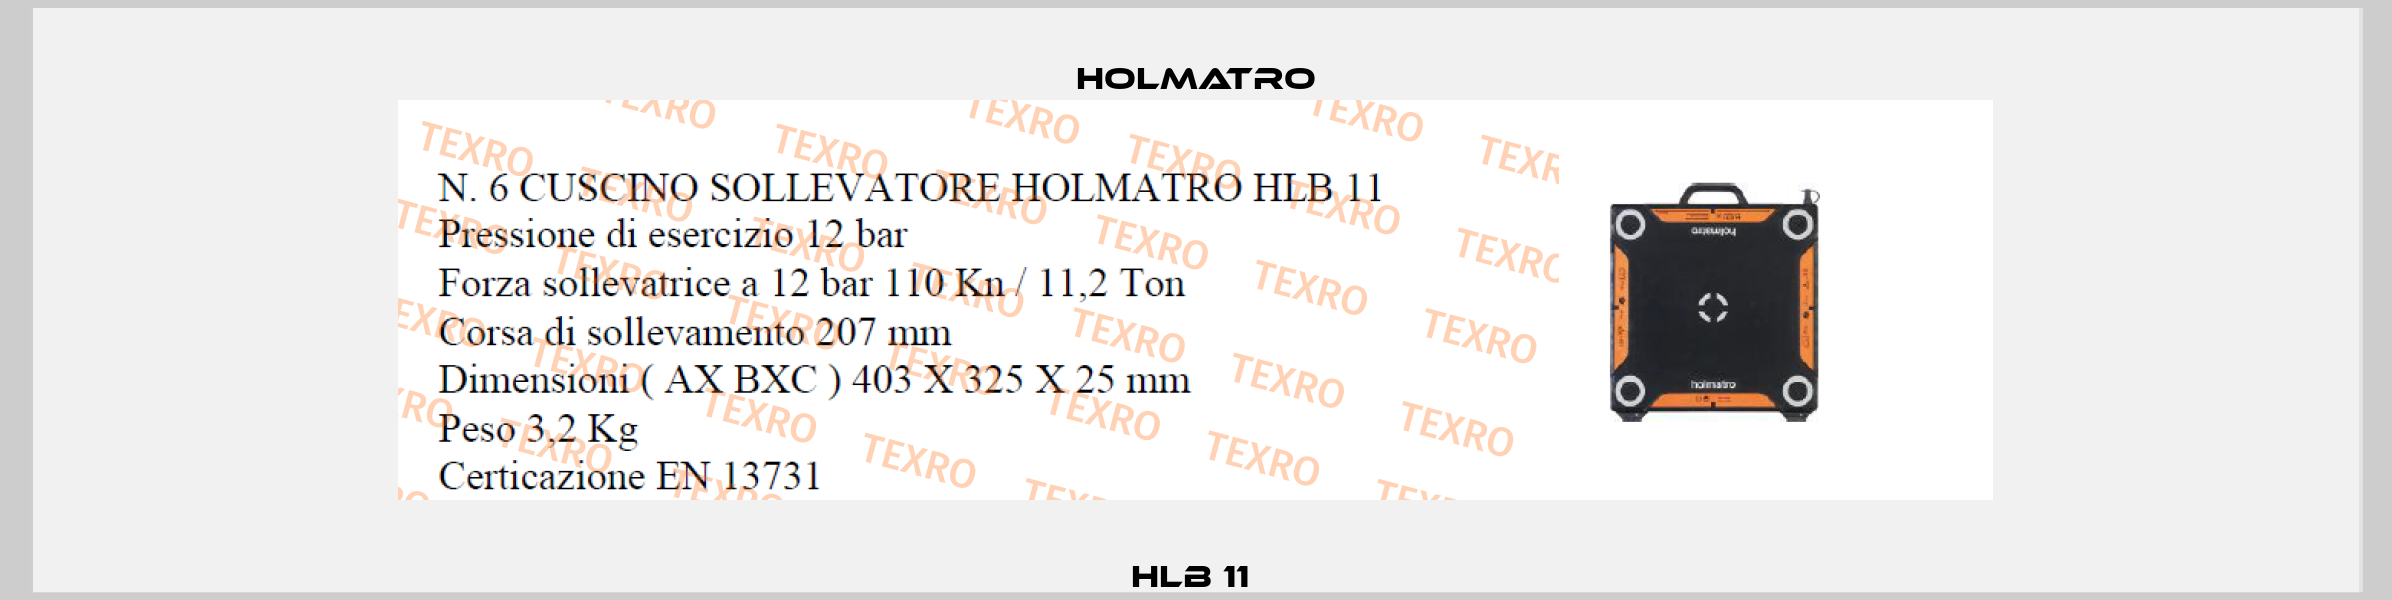 HLB 11  Holmatro